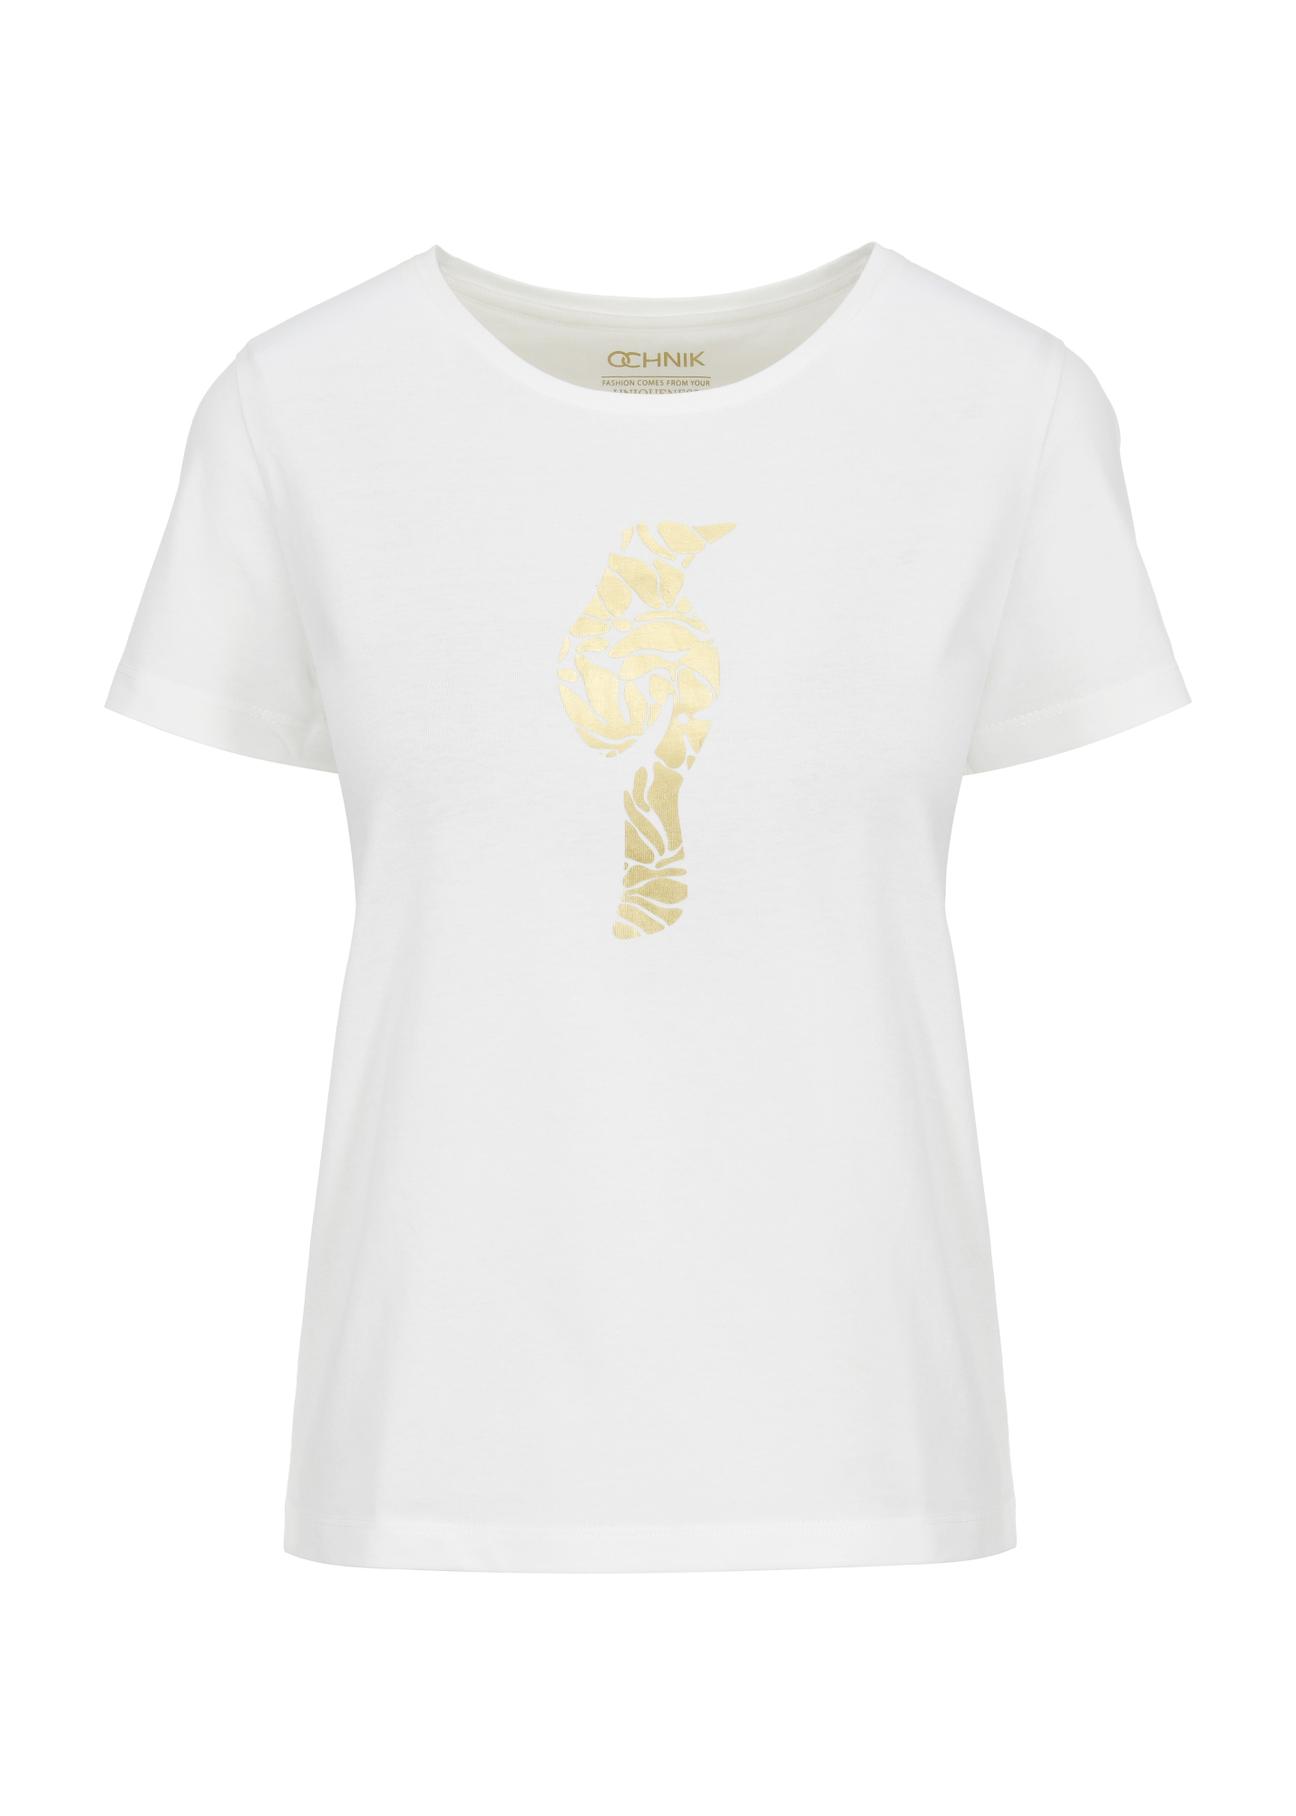 T-shirt damski kremowy z wilgą TSHDT-0124-12(W24)